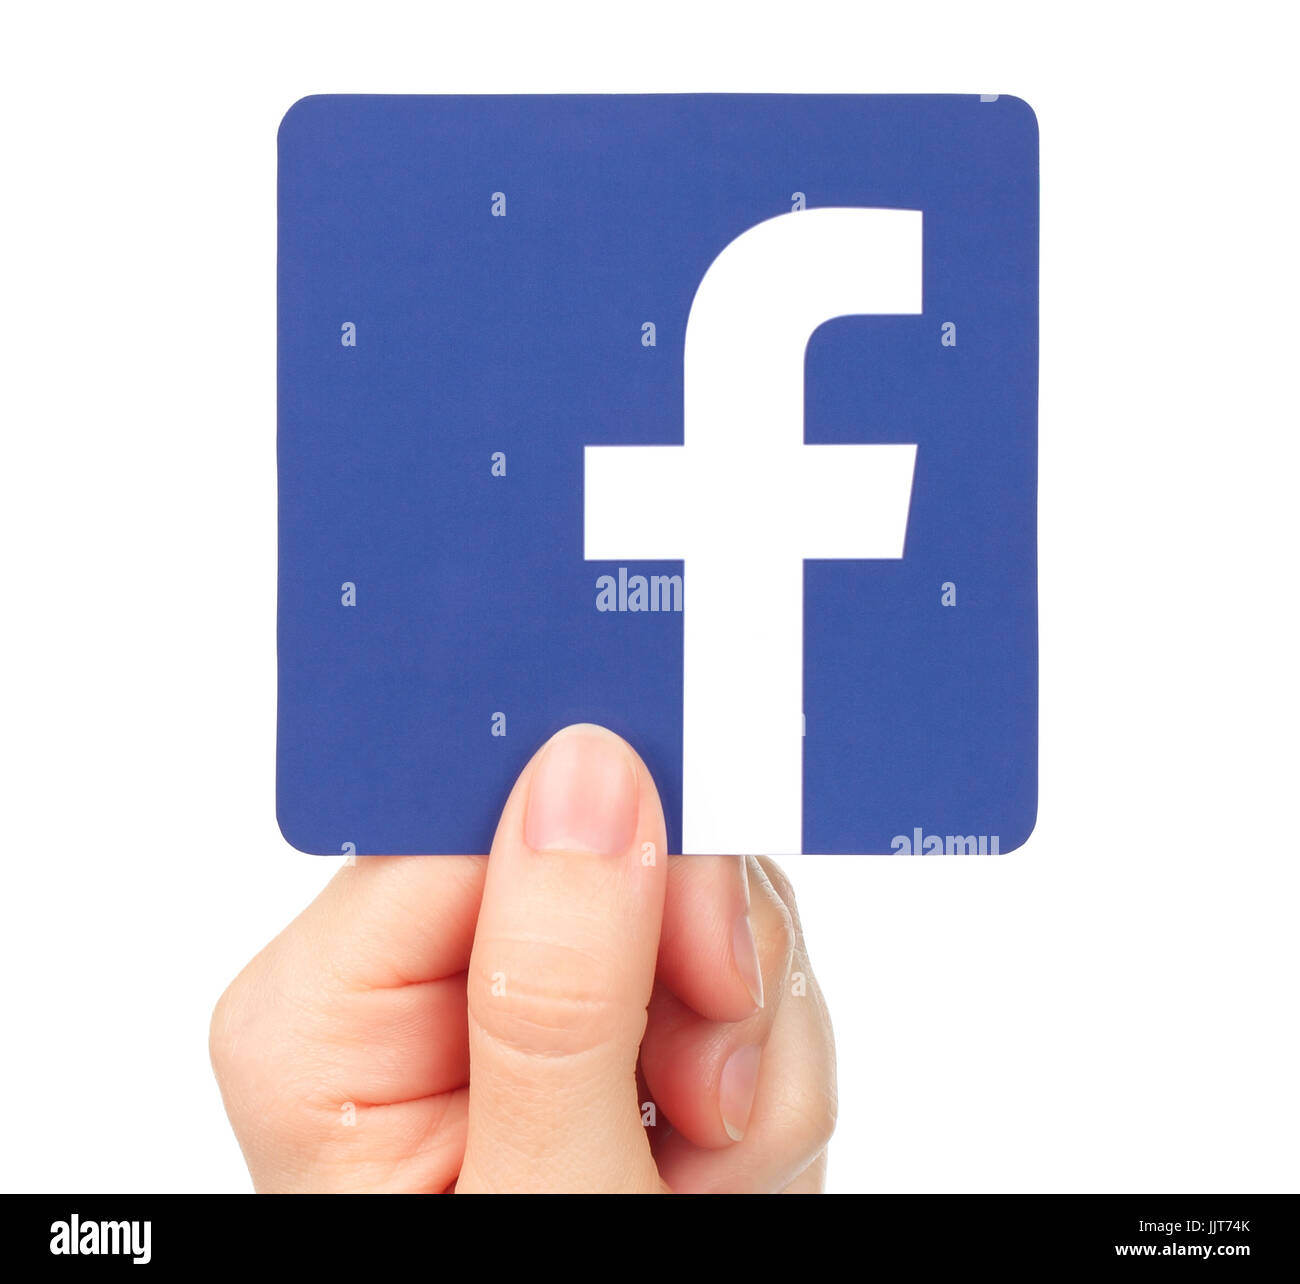 Kiew, Ukraine - 20. Januar 2016: Hand hält Facebook-Symbol auf Papier gedruckt. Facebook ist ein bekannter social-Networking-Dienst Stockfoto